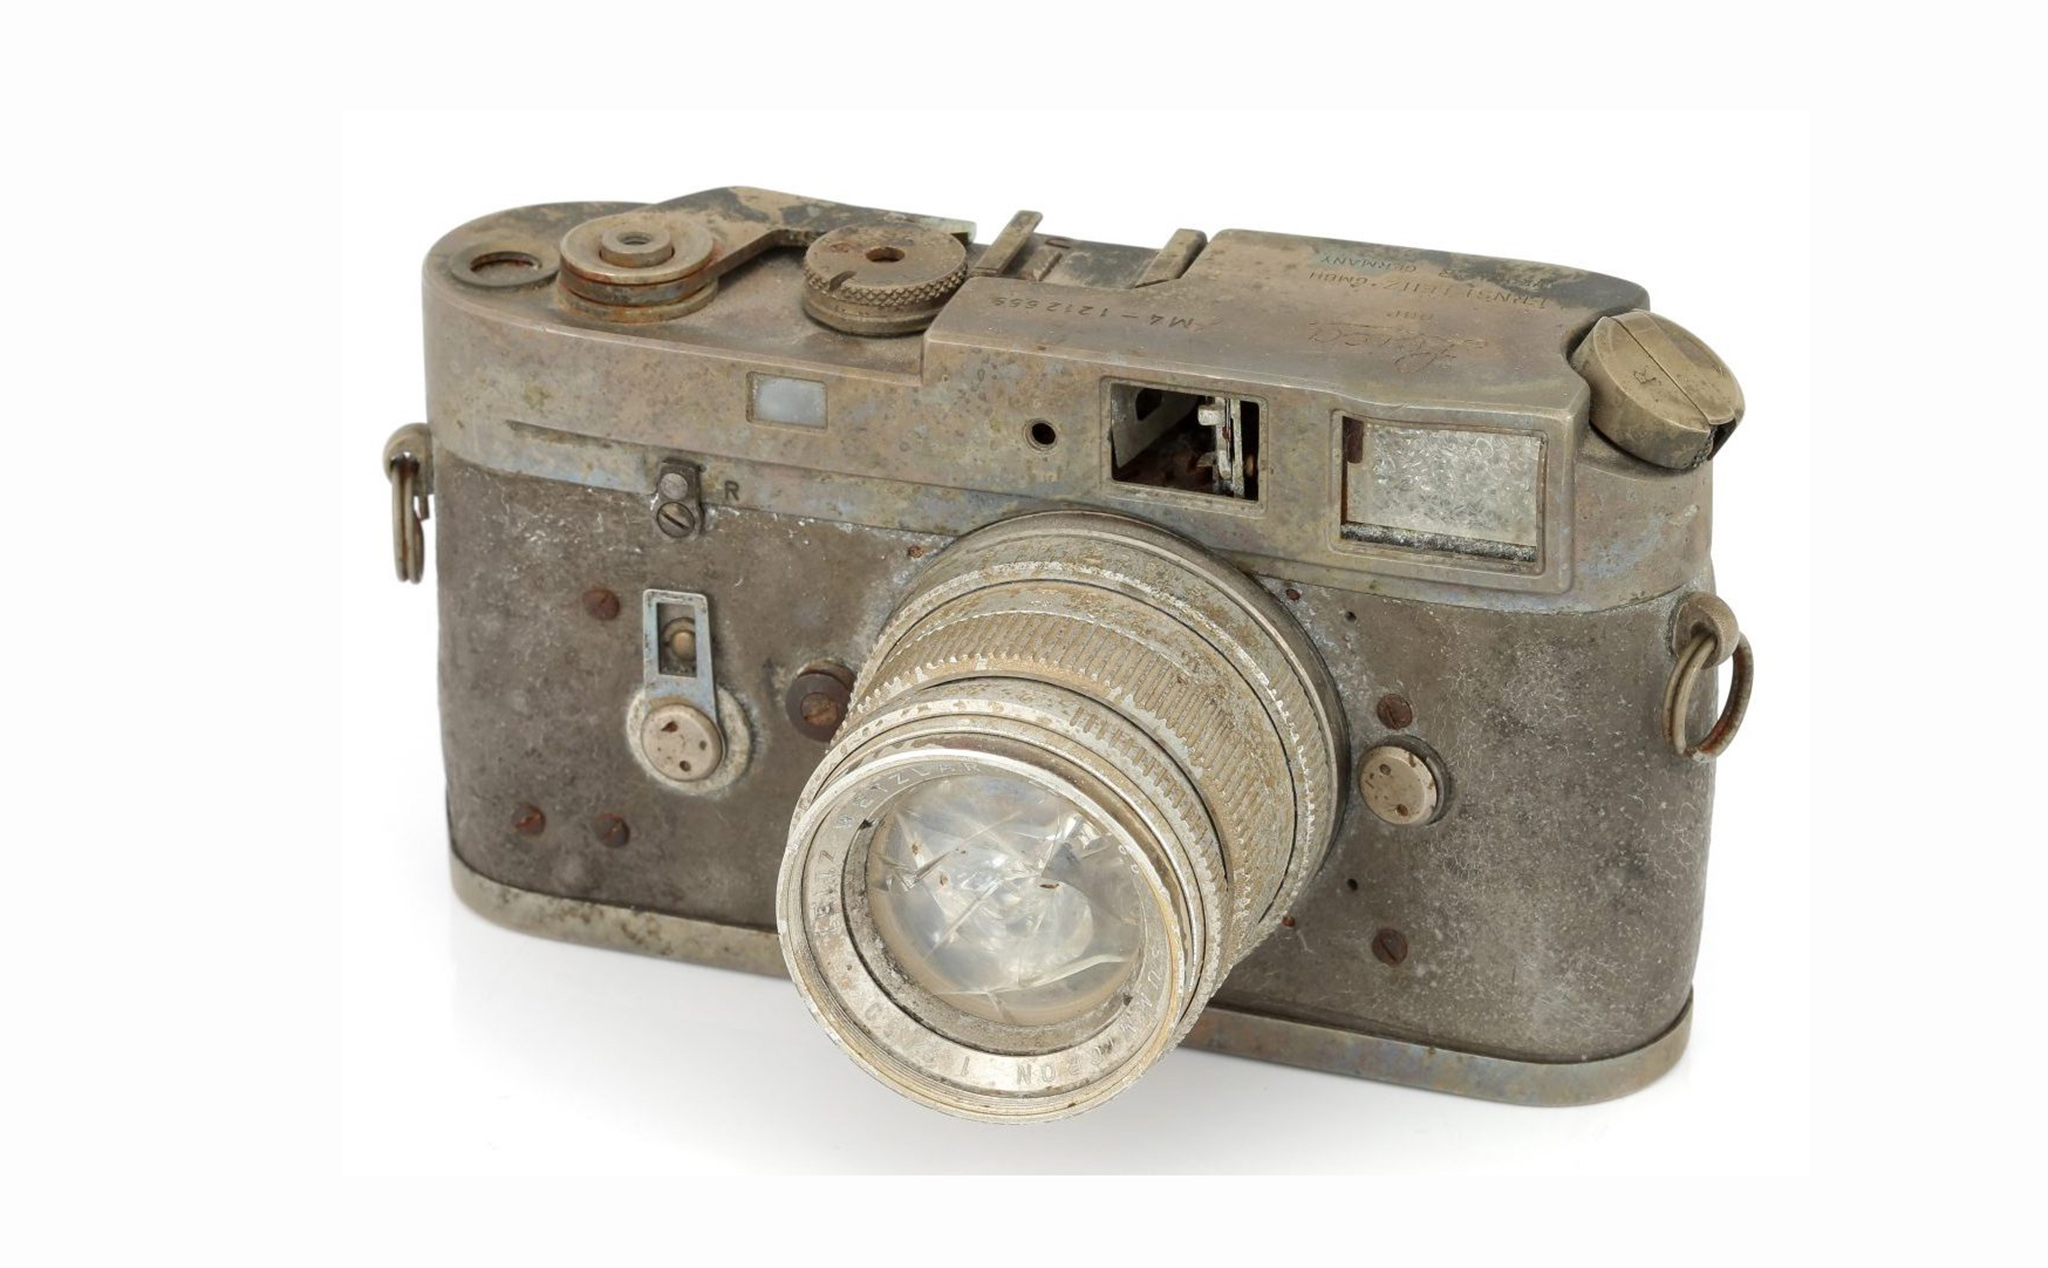 Đấu giá chiếc Leica M4 bị cháy hoàn toàn, có người mua với giá 2000 USD